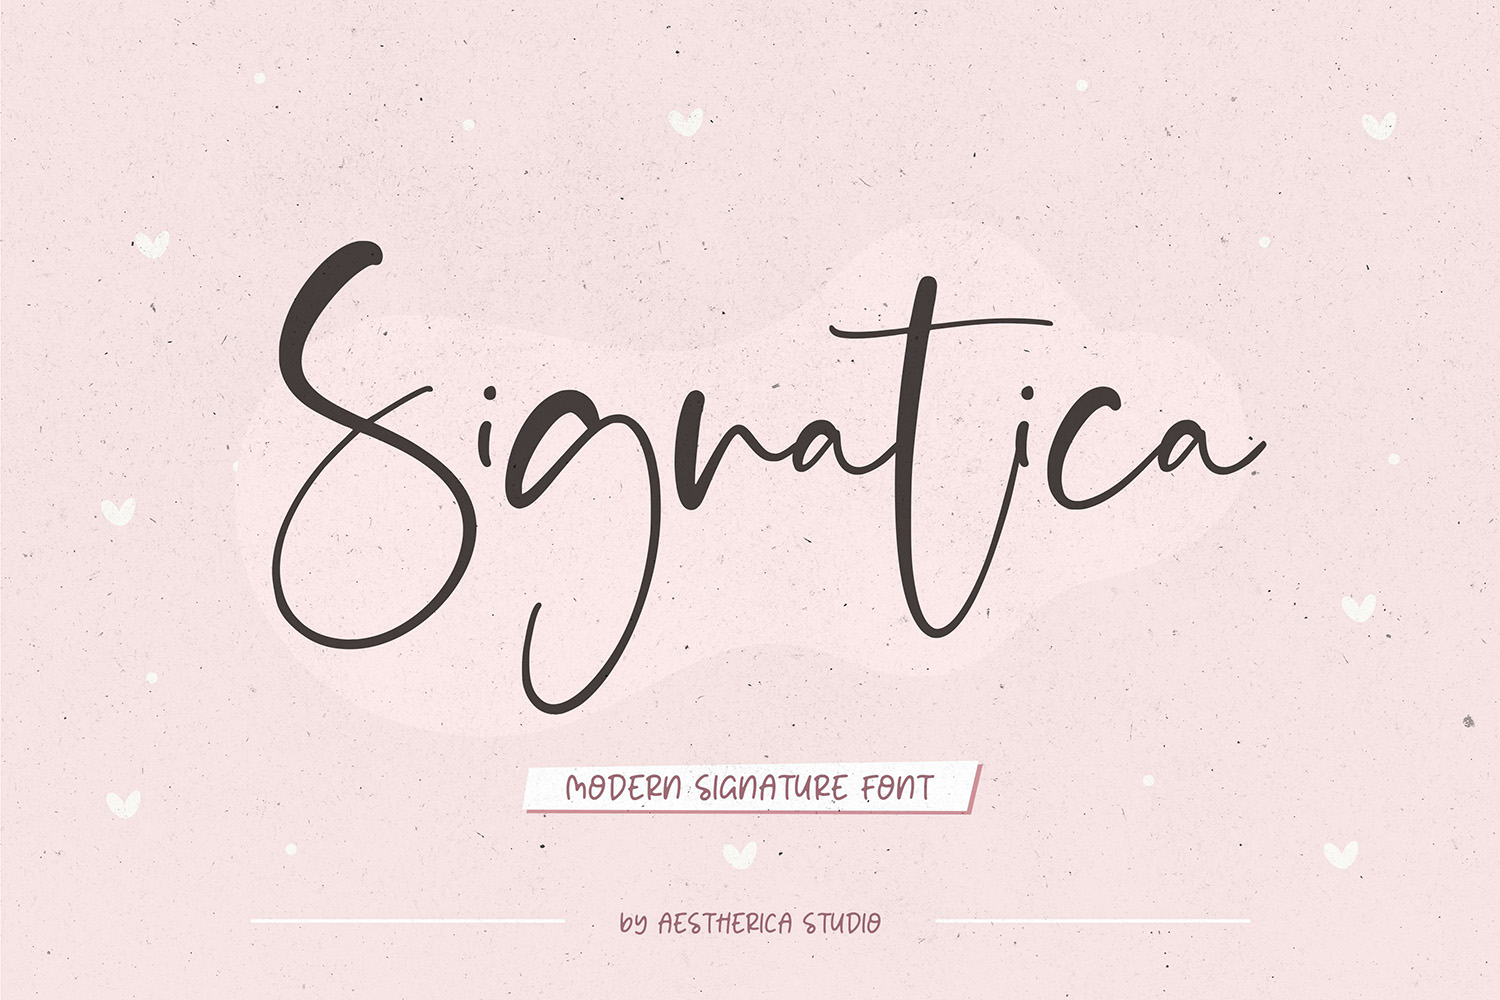 Signatica Free Font